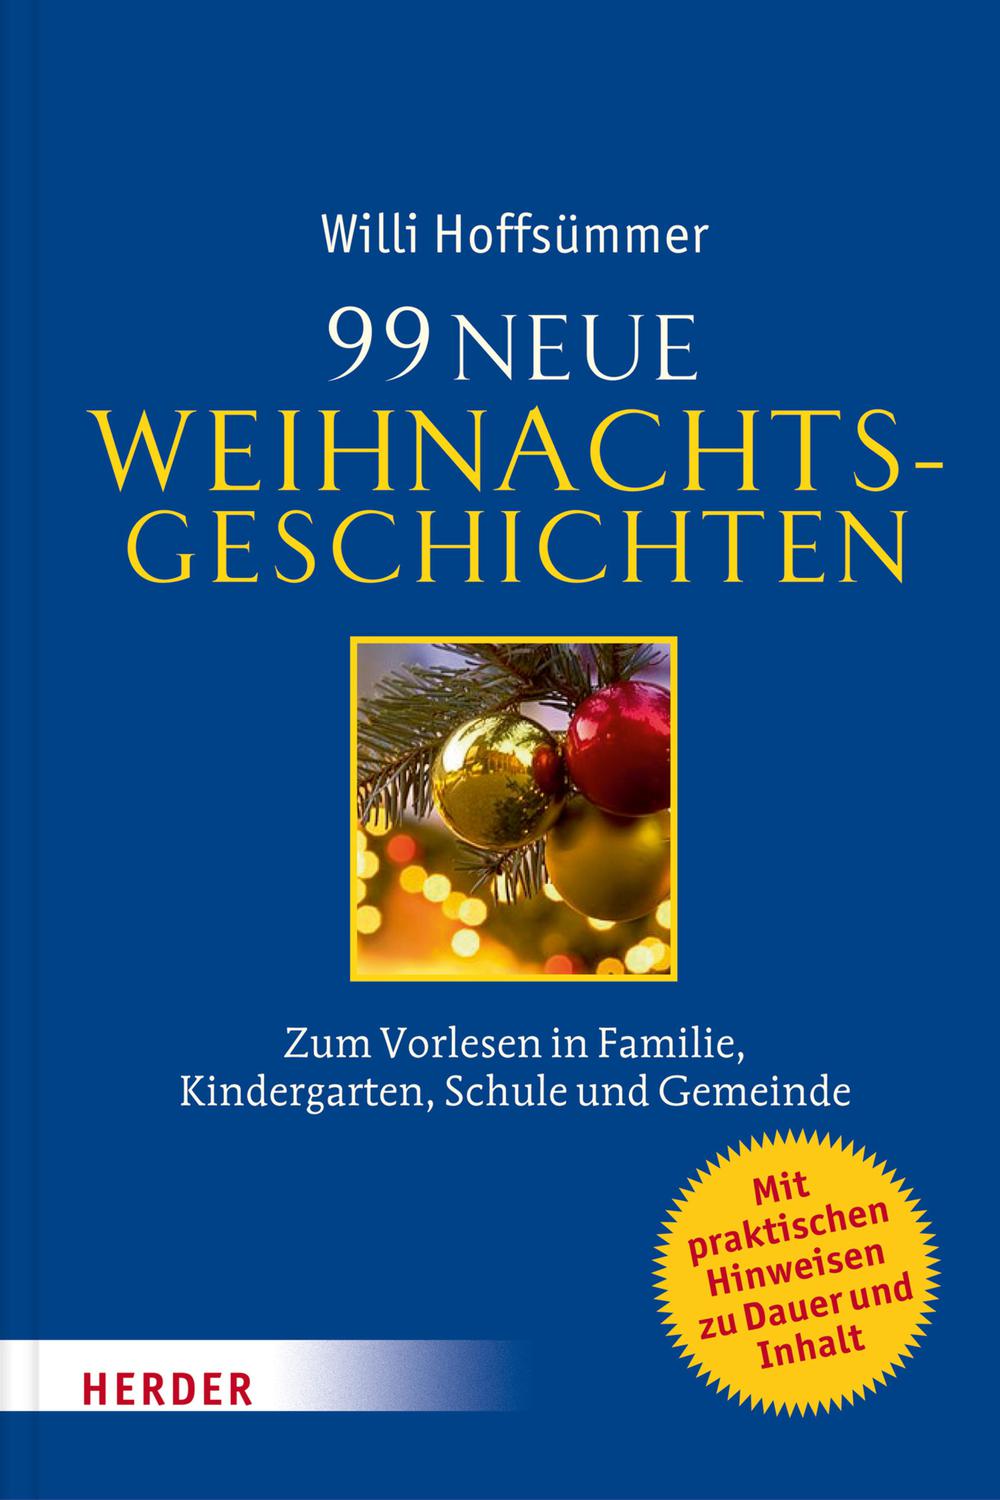 99 neue Weihnachtsgeschichten - Willi Hoffsümmer